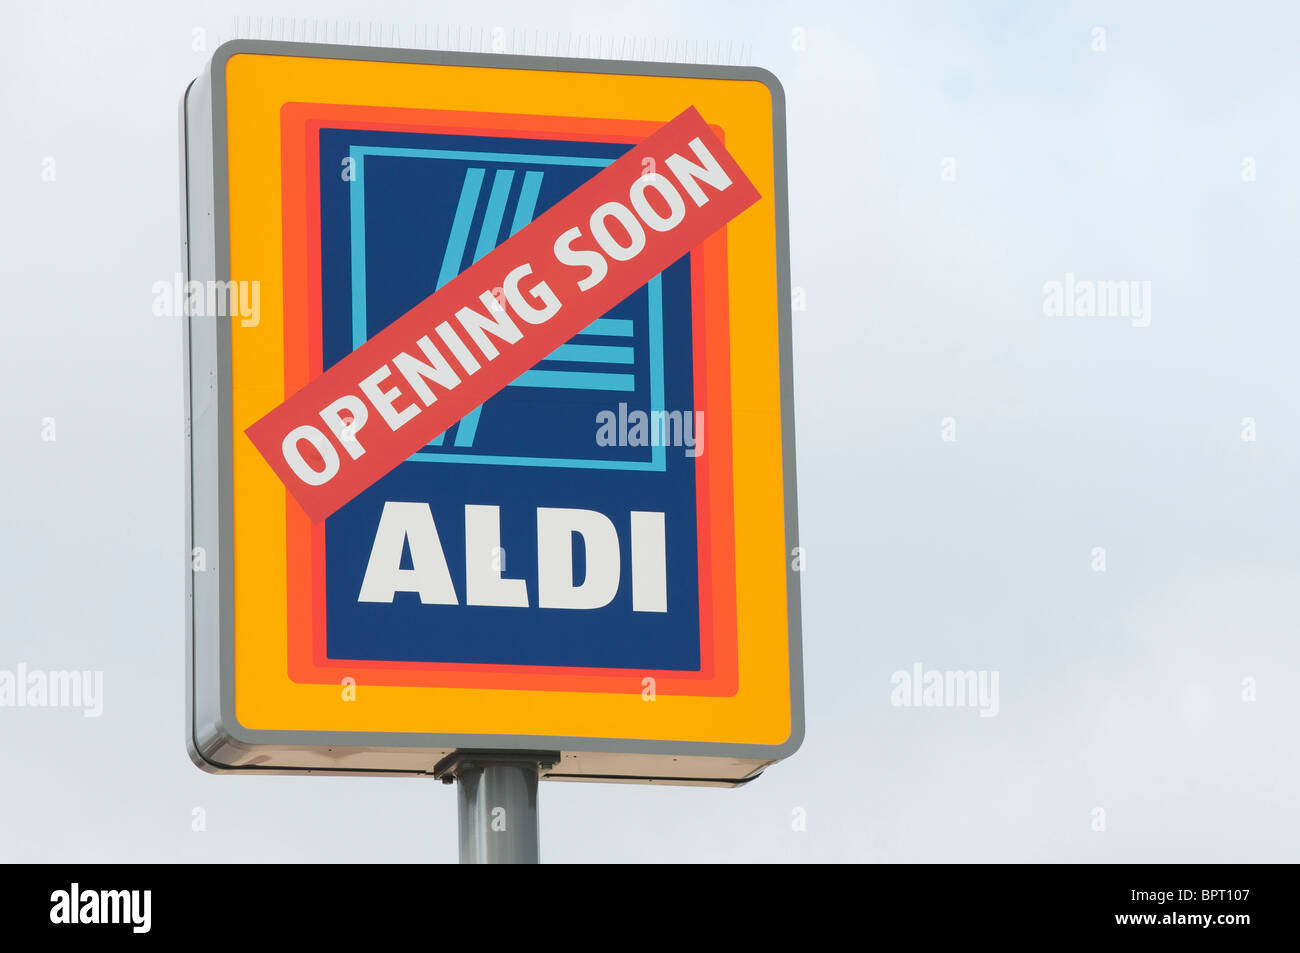 Aldi supermarket opening soon Stock Photo